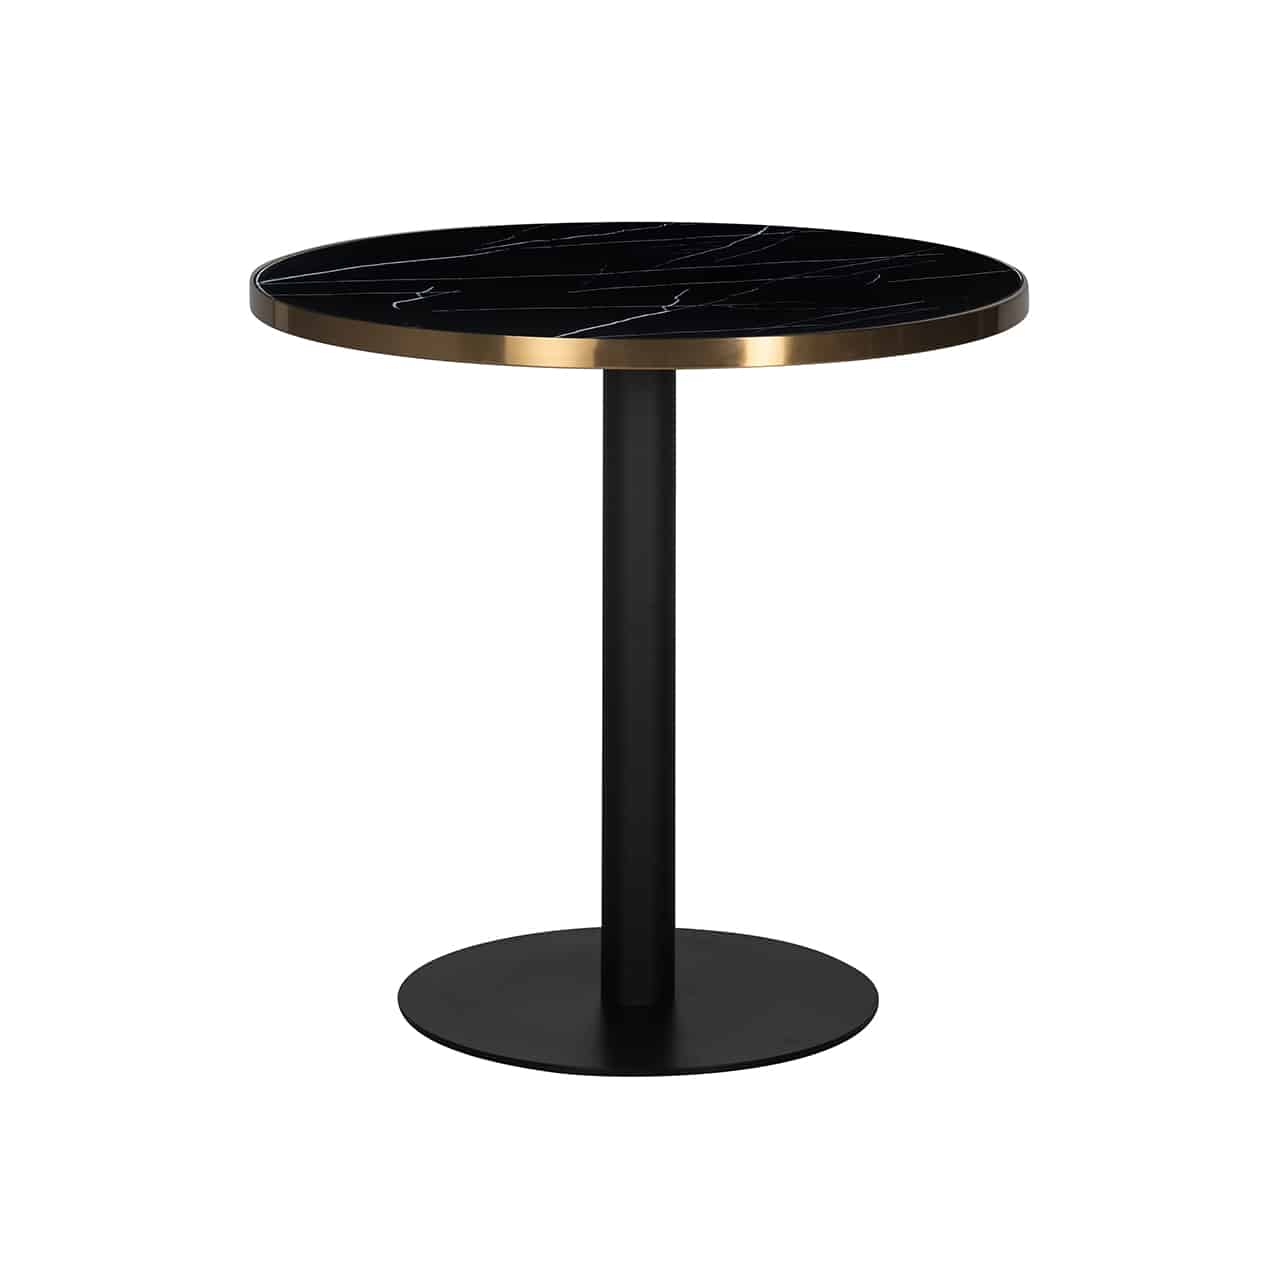 Kleiner Esstisch in schwarz, bestehend aus einem runden Standteller mit einem säulenartigen Fuß, darauf eine runde, marmorierte Tischplatte, eingerahmt von einem breiten Goldband. 